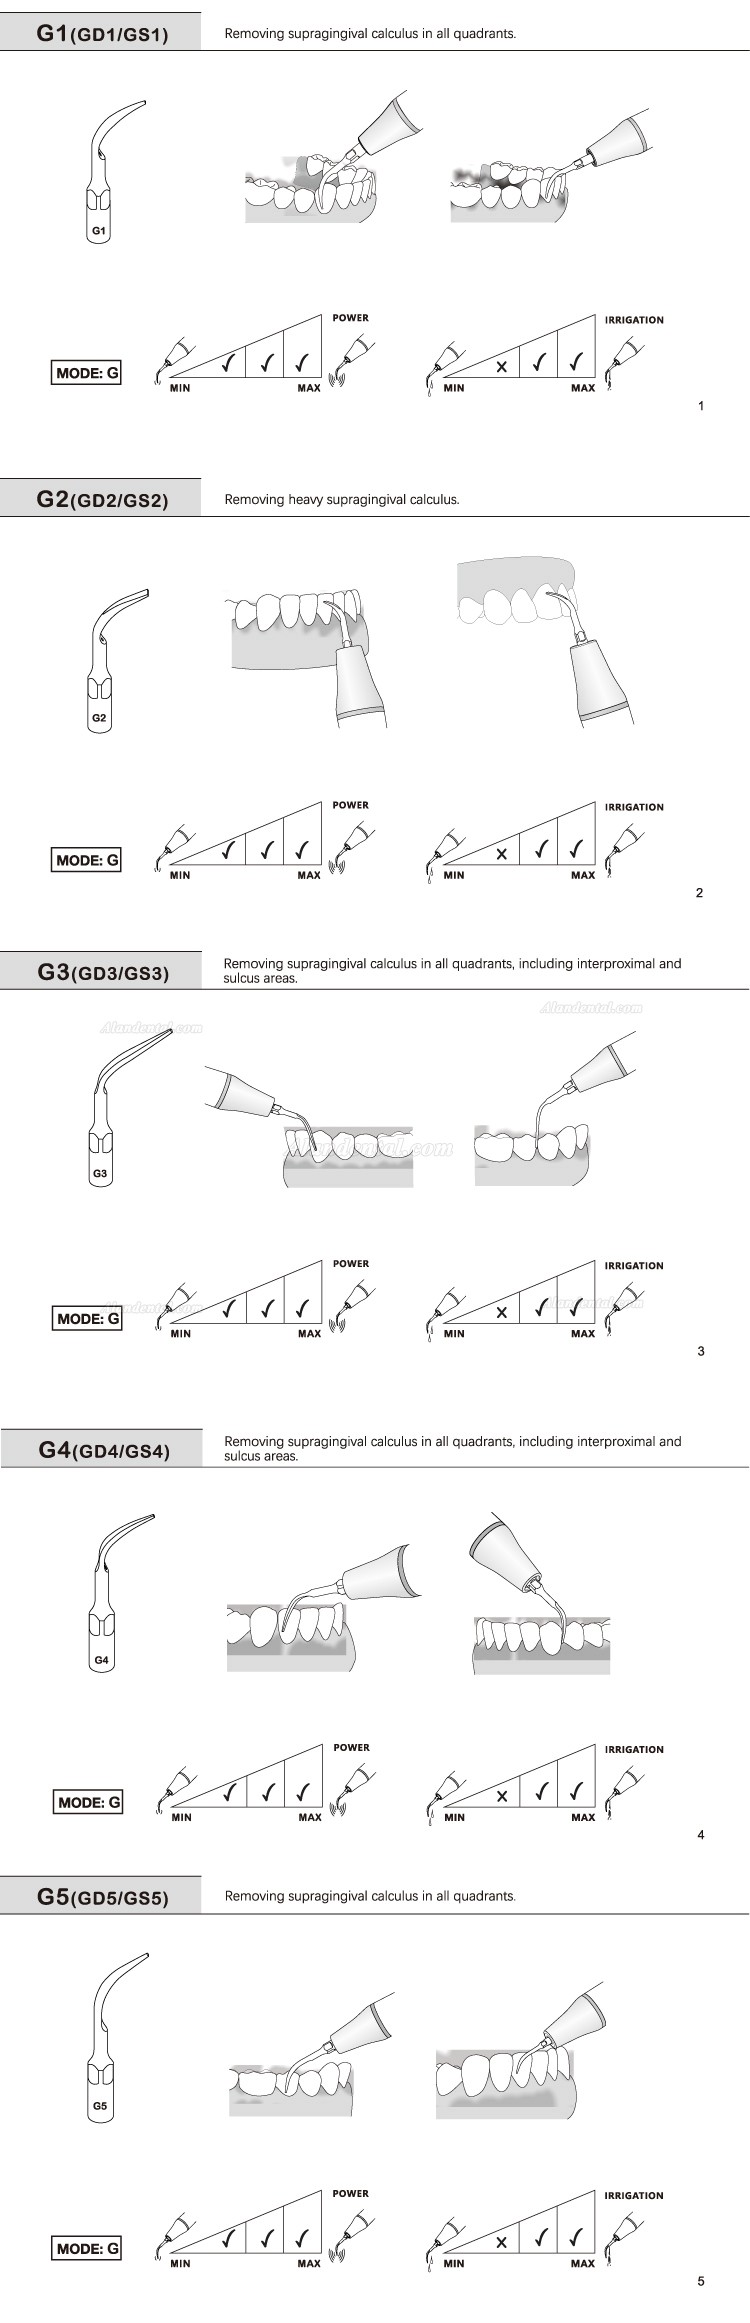 10Pcs Refine® Dental Scaler Tips G1 G2 G3 G4 G5 G6 GD1 GD2 GD3 GD4 GD5 GD6 Compatible with EMS Woodpecker